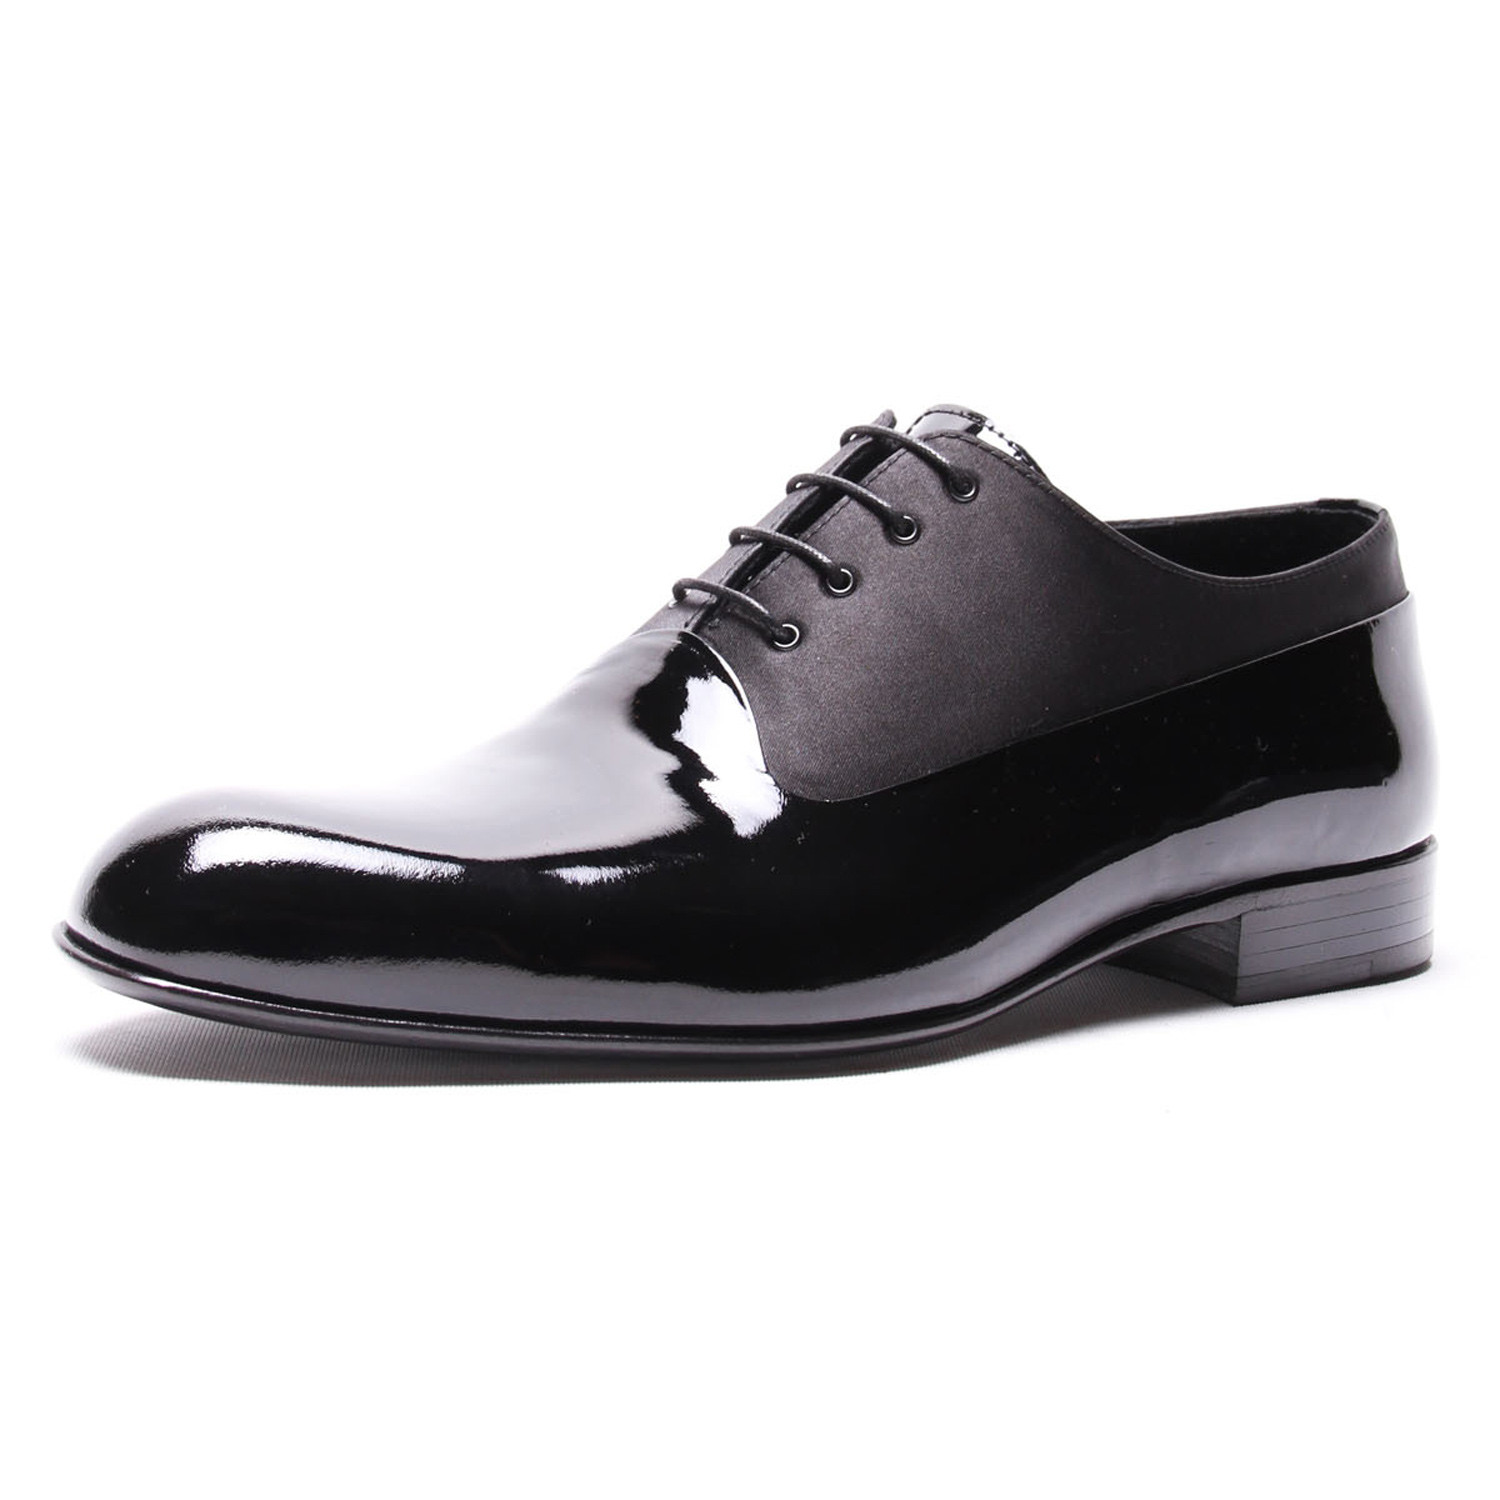 Matte Mix Oxford // Black Patent (Euro: 40) - DAPPERMAN M.T.O. Shoes ...